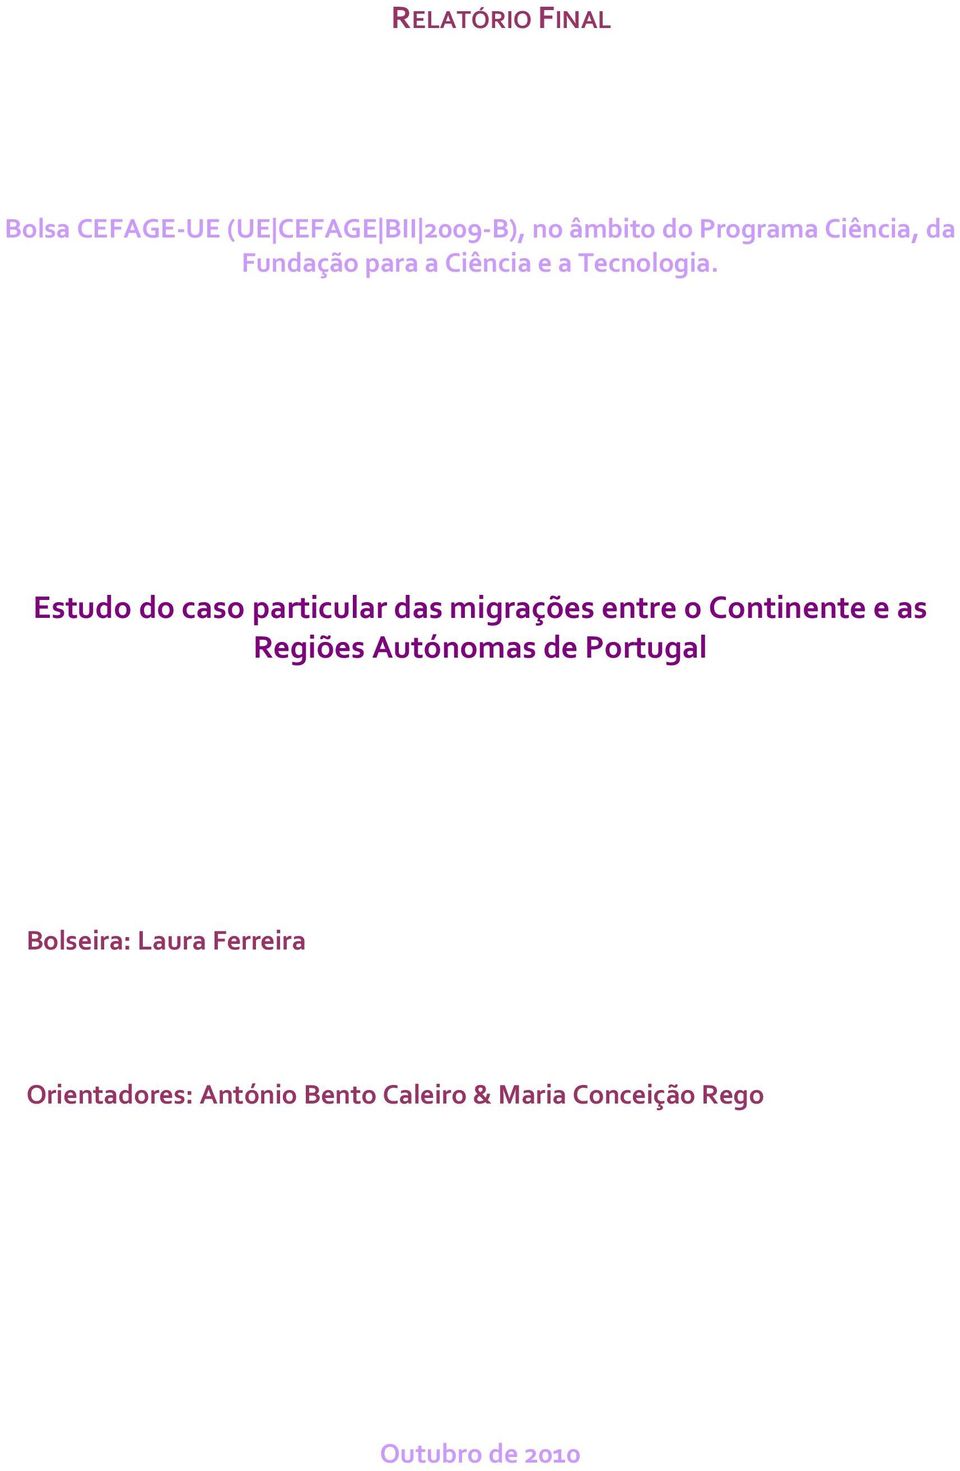 Estudo do caso particular das migrações entre o Continente e as Regiões